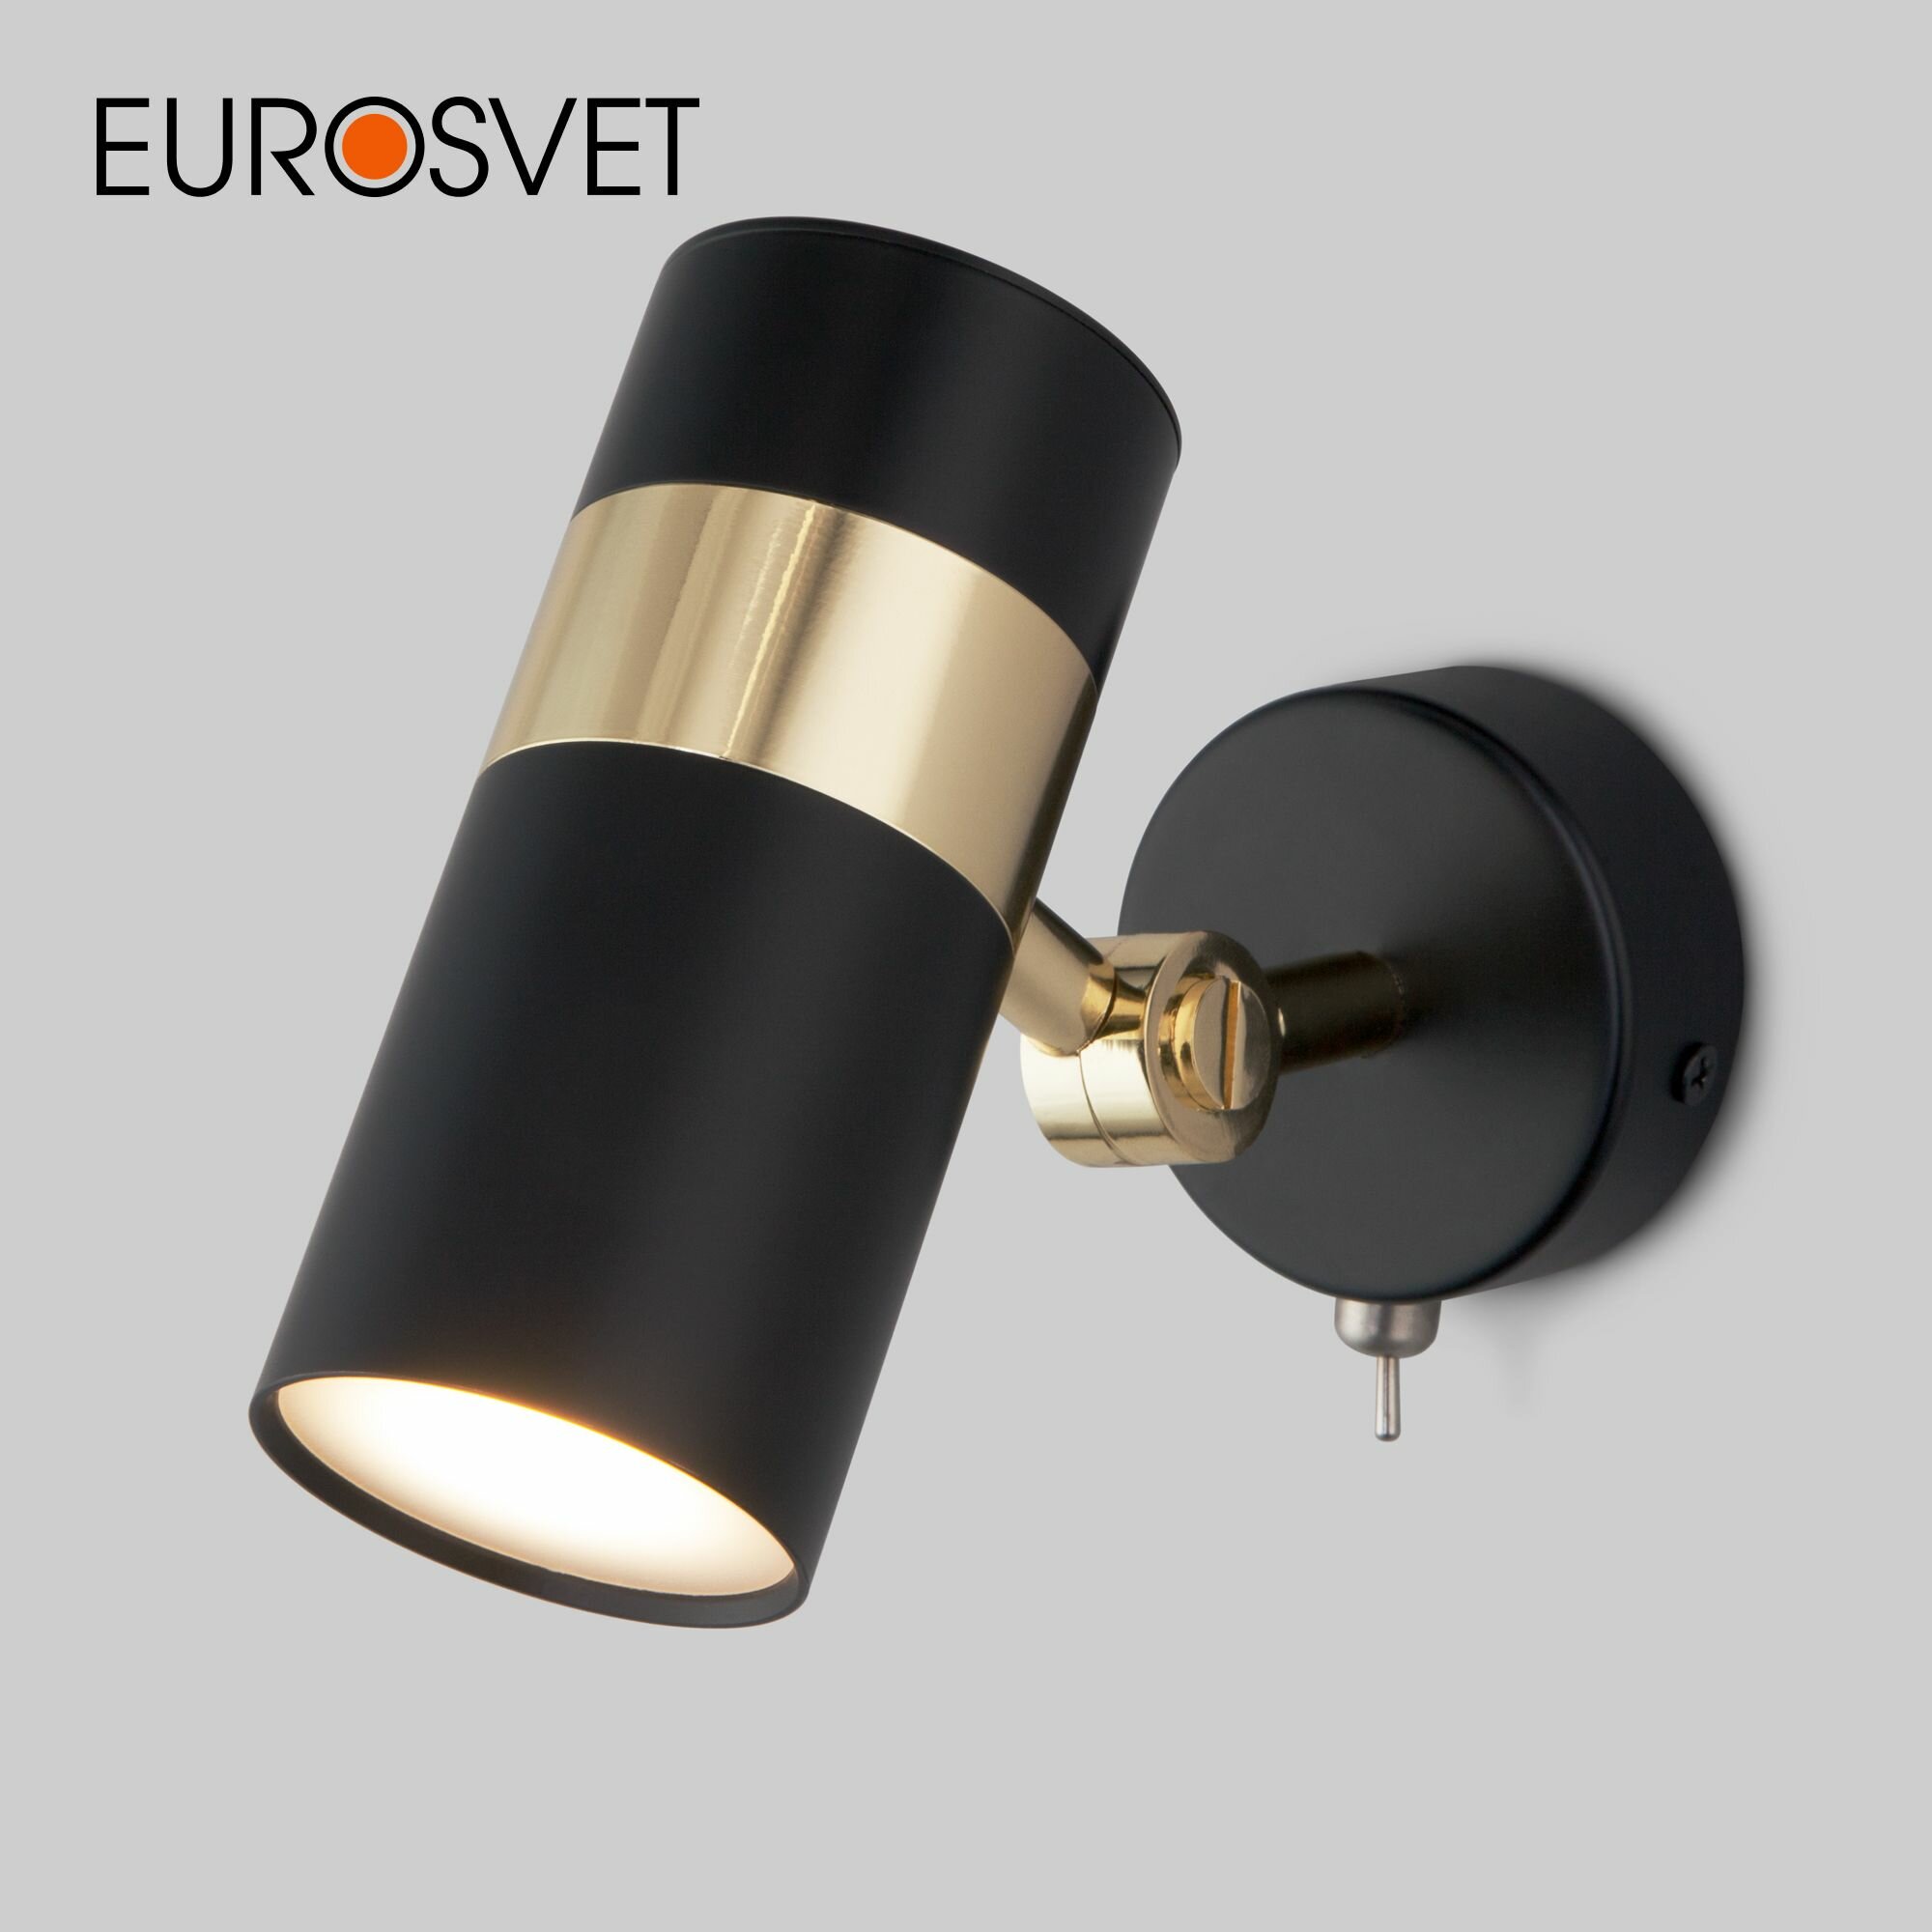 Спот / Настенный светильник с поворотным плафоном Eurosvet Viero 20096/1, GU10, цвет черный / золото